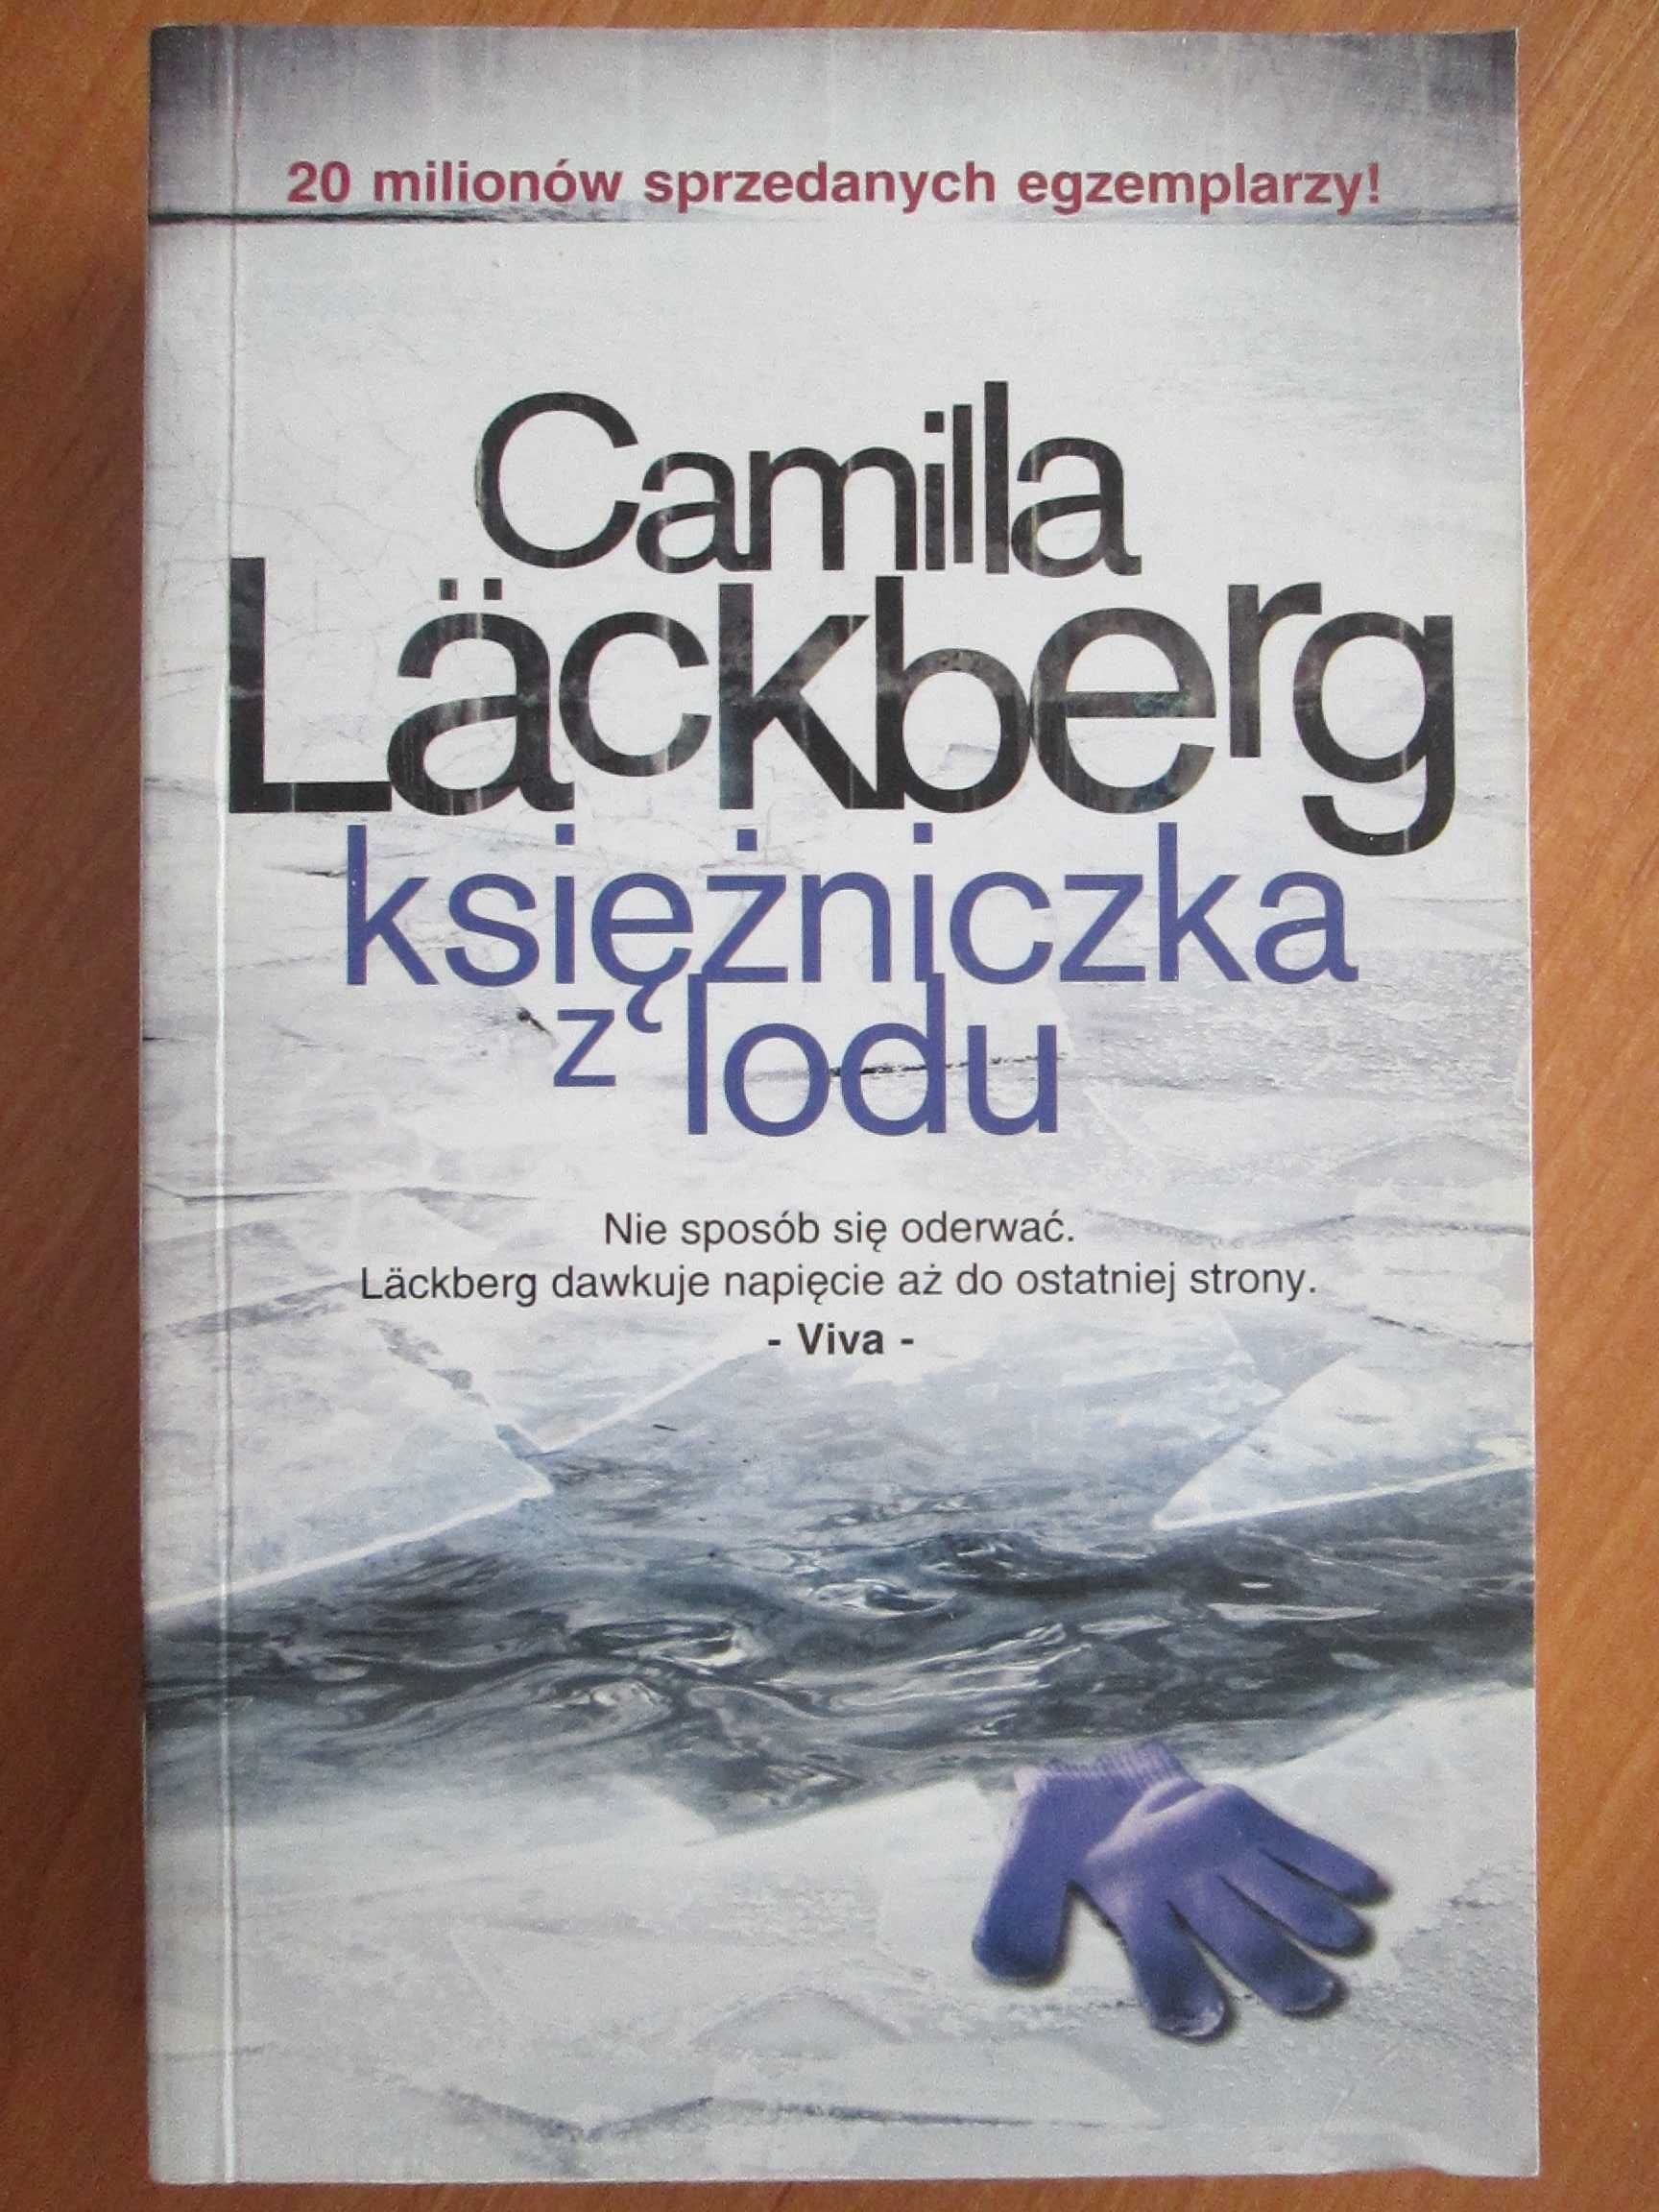 "Księżniczka z lodu", autor: Camilla Lackberg